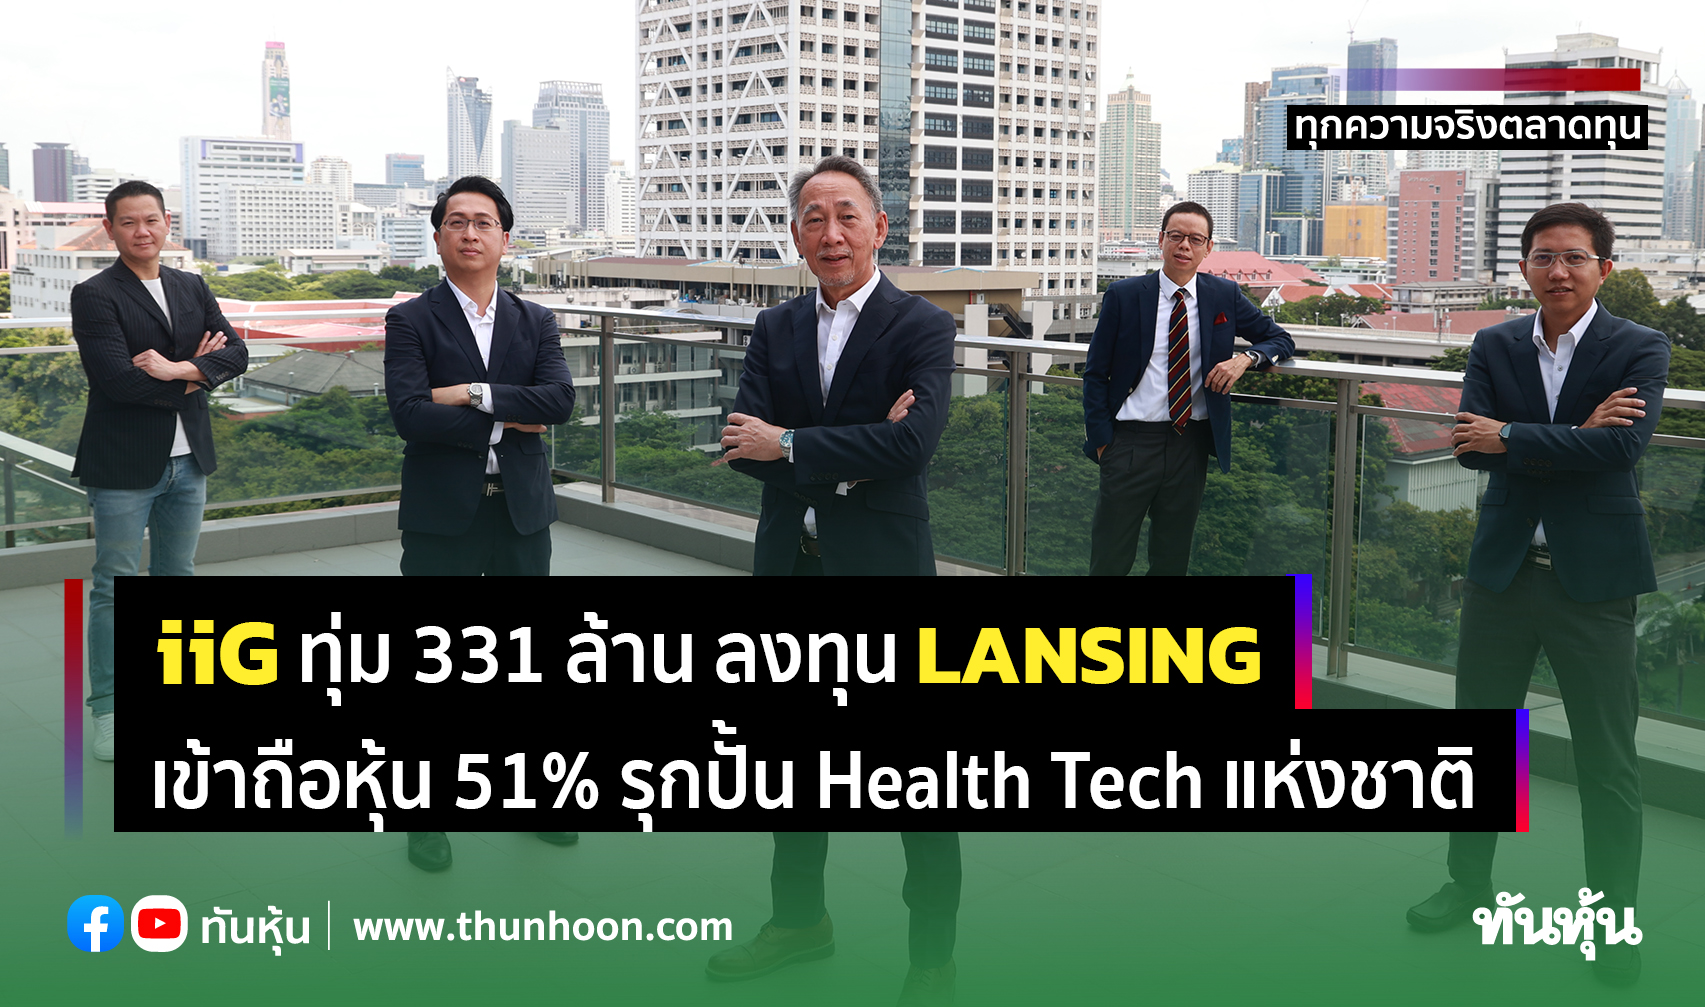 iiG ทุ่ม 331 ล้าน ลงทุน LANSING เข้าถือหุ้น 51% รุกปั้น Health Tech แห่งชาติ